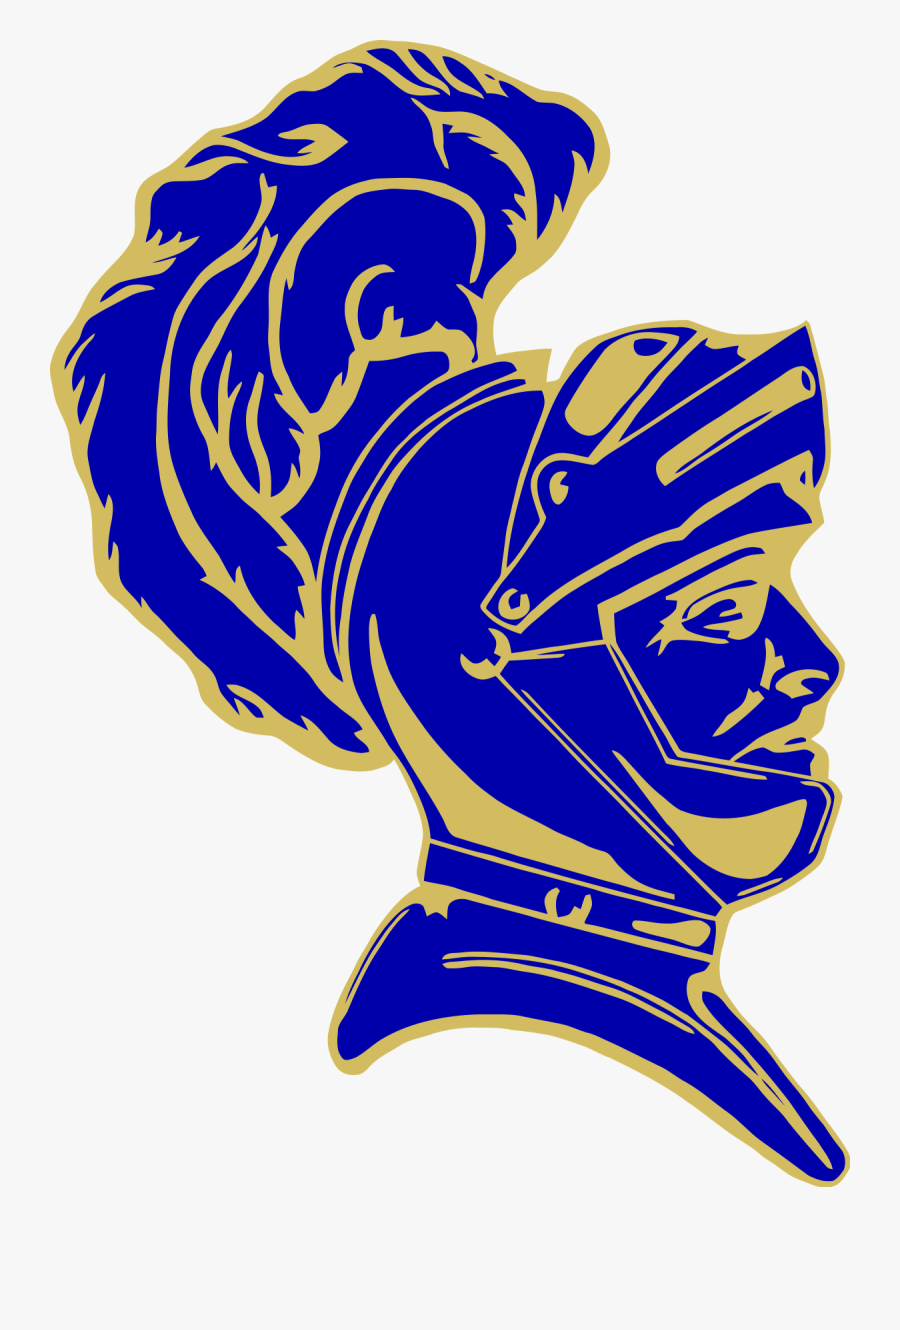 Norwin High School Mascot, Transparent Clipart